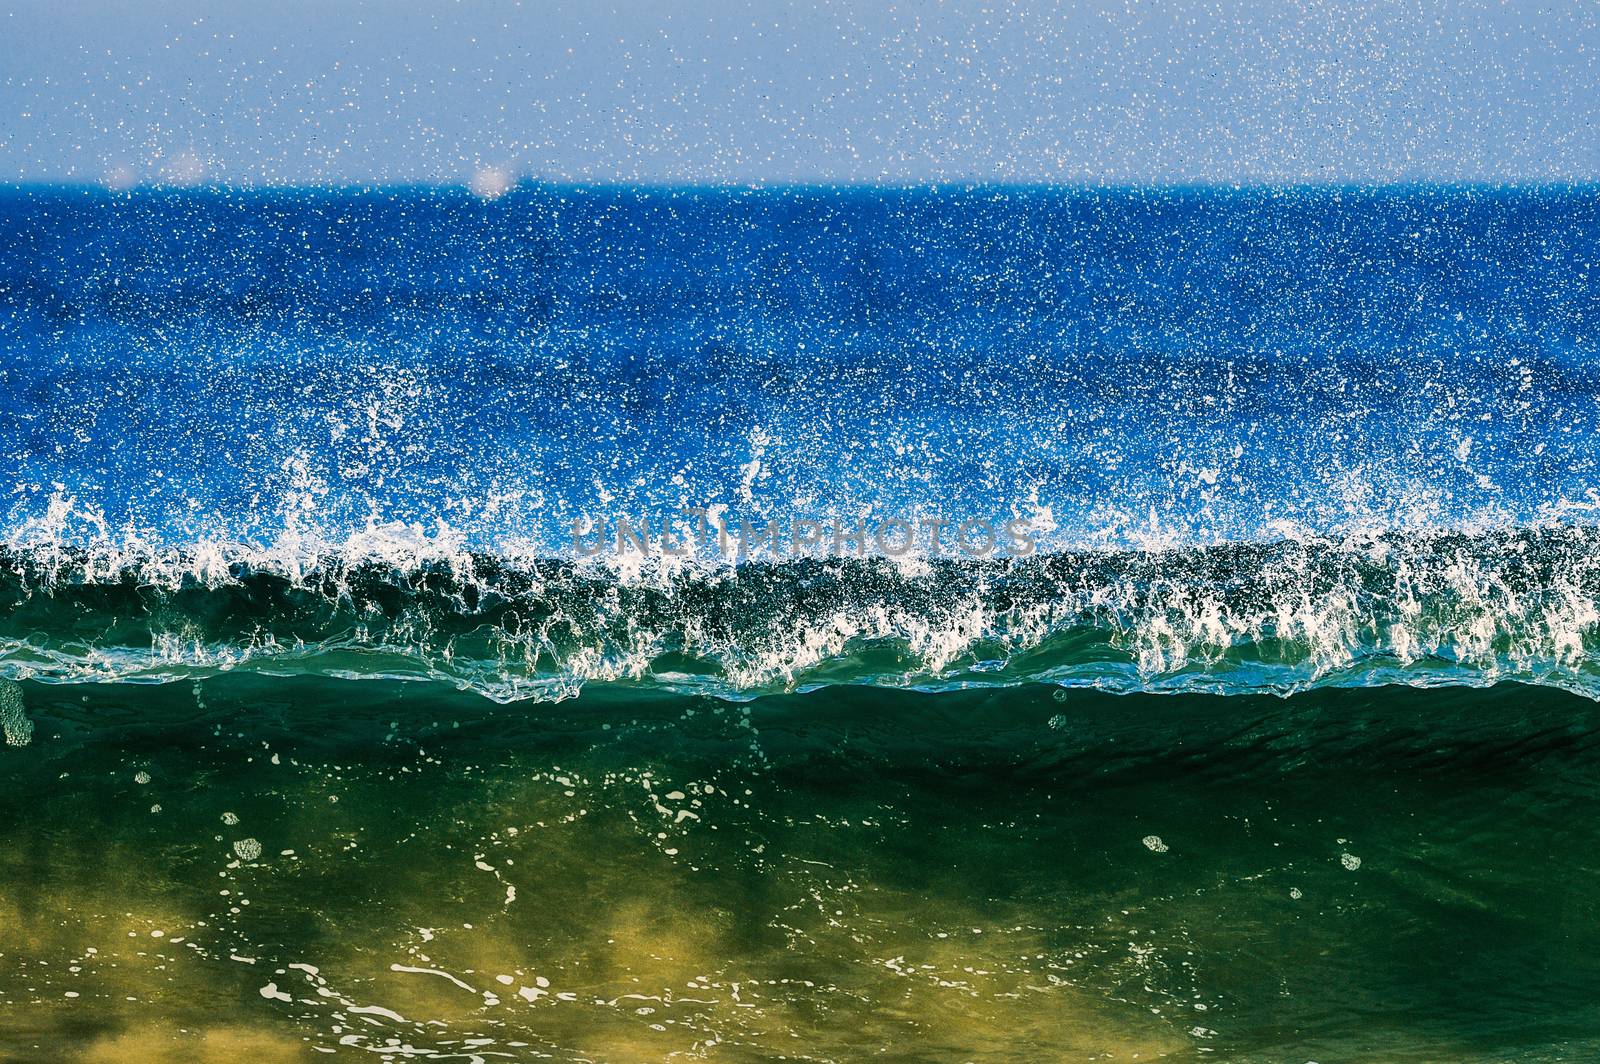 Splash waves by styf22